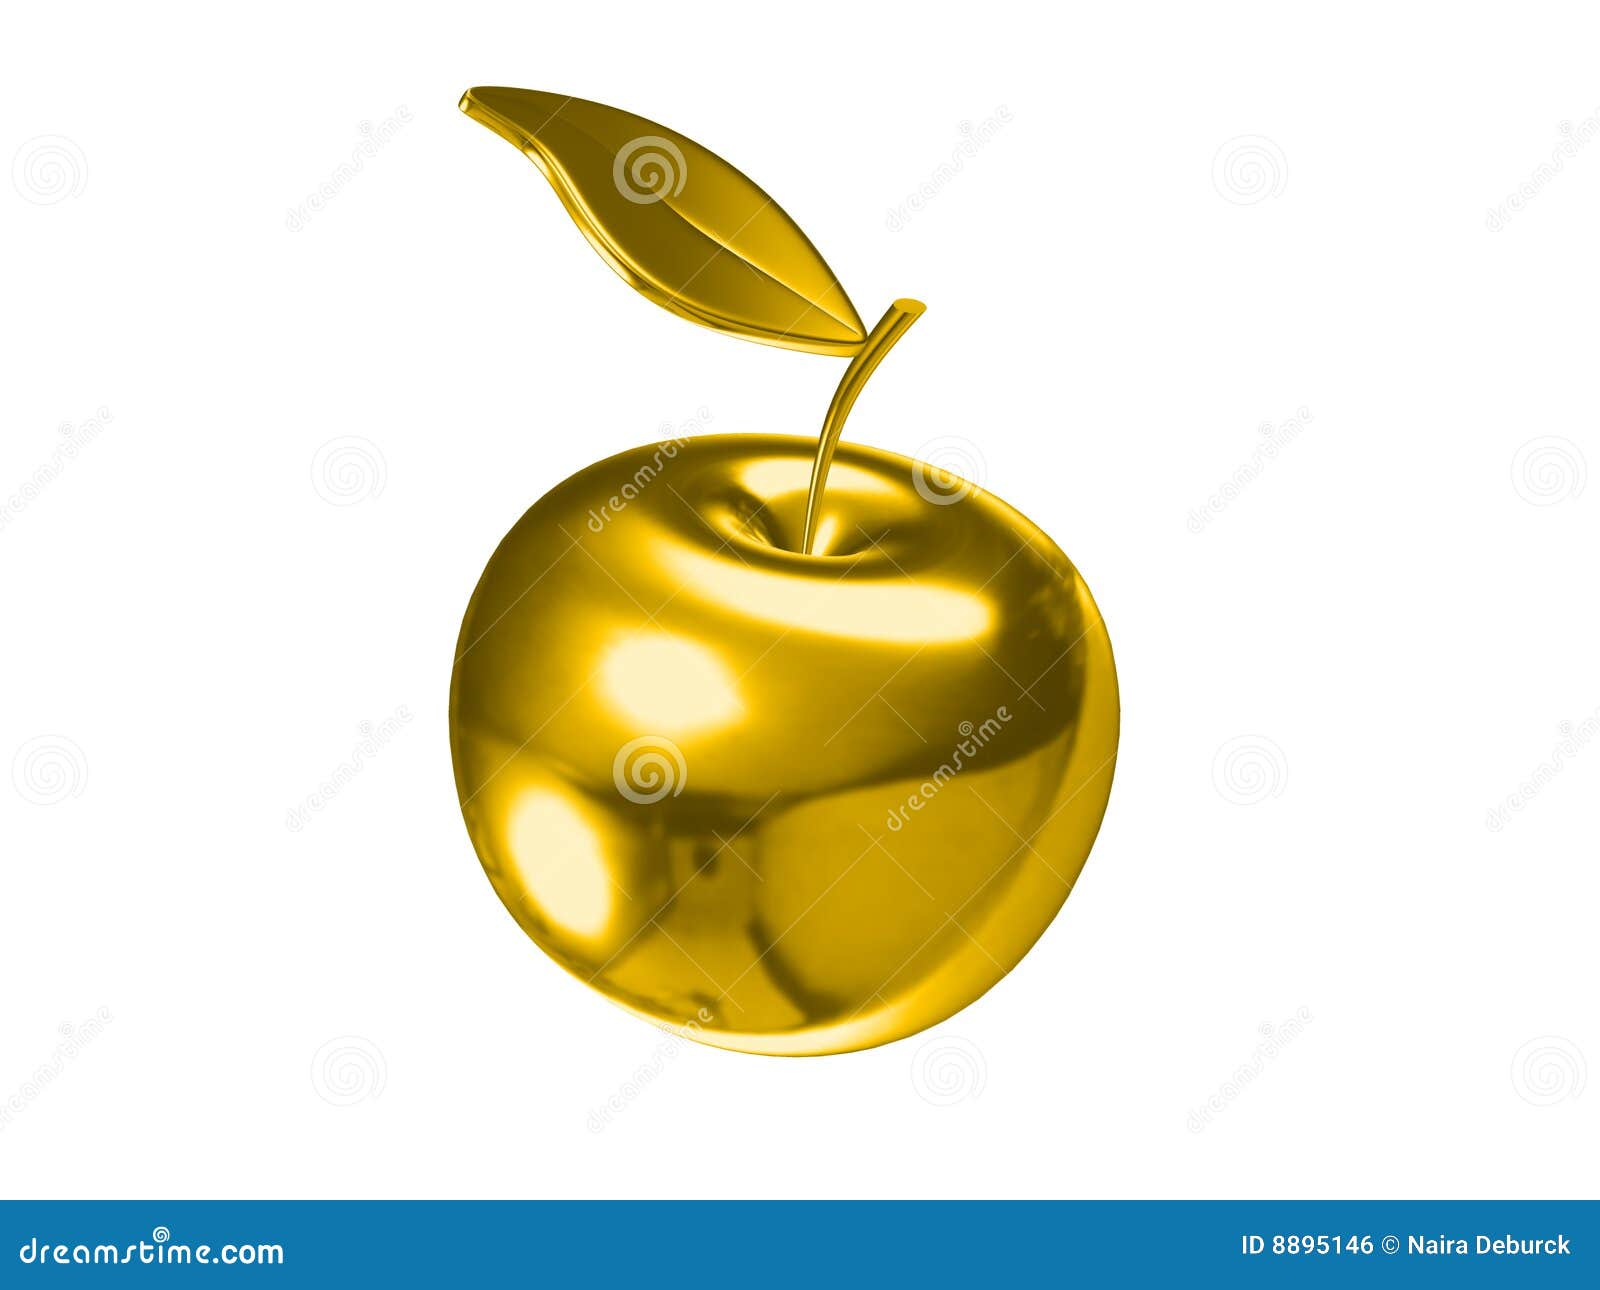 Картинка золотое яблоко на прозрачном фоне